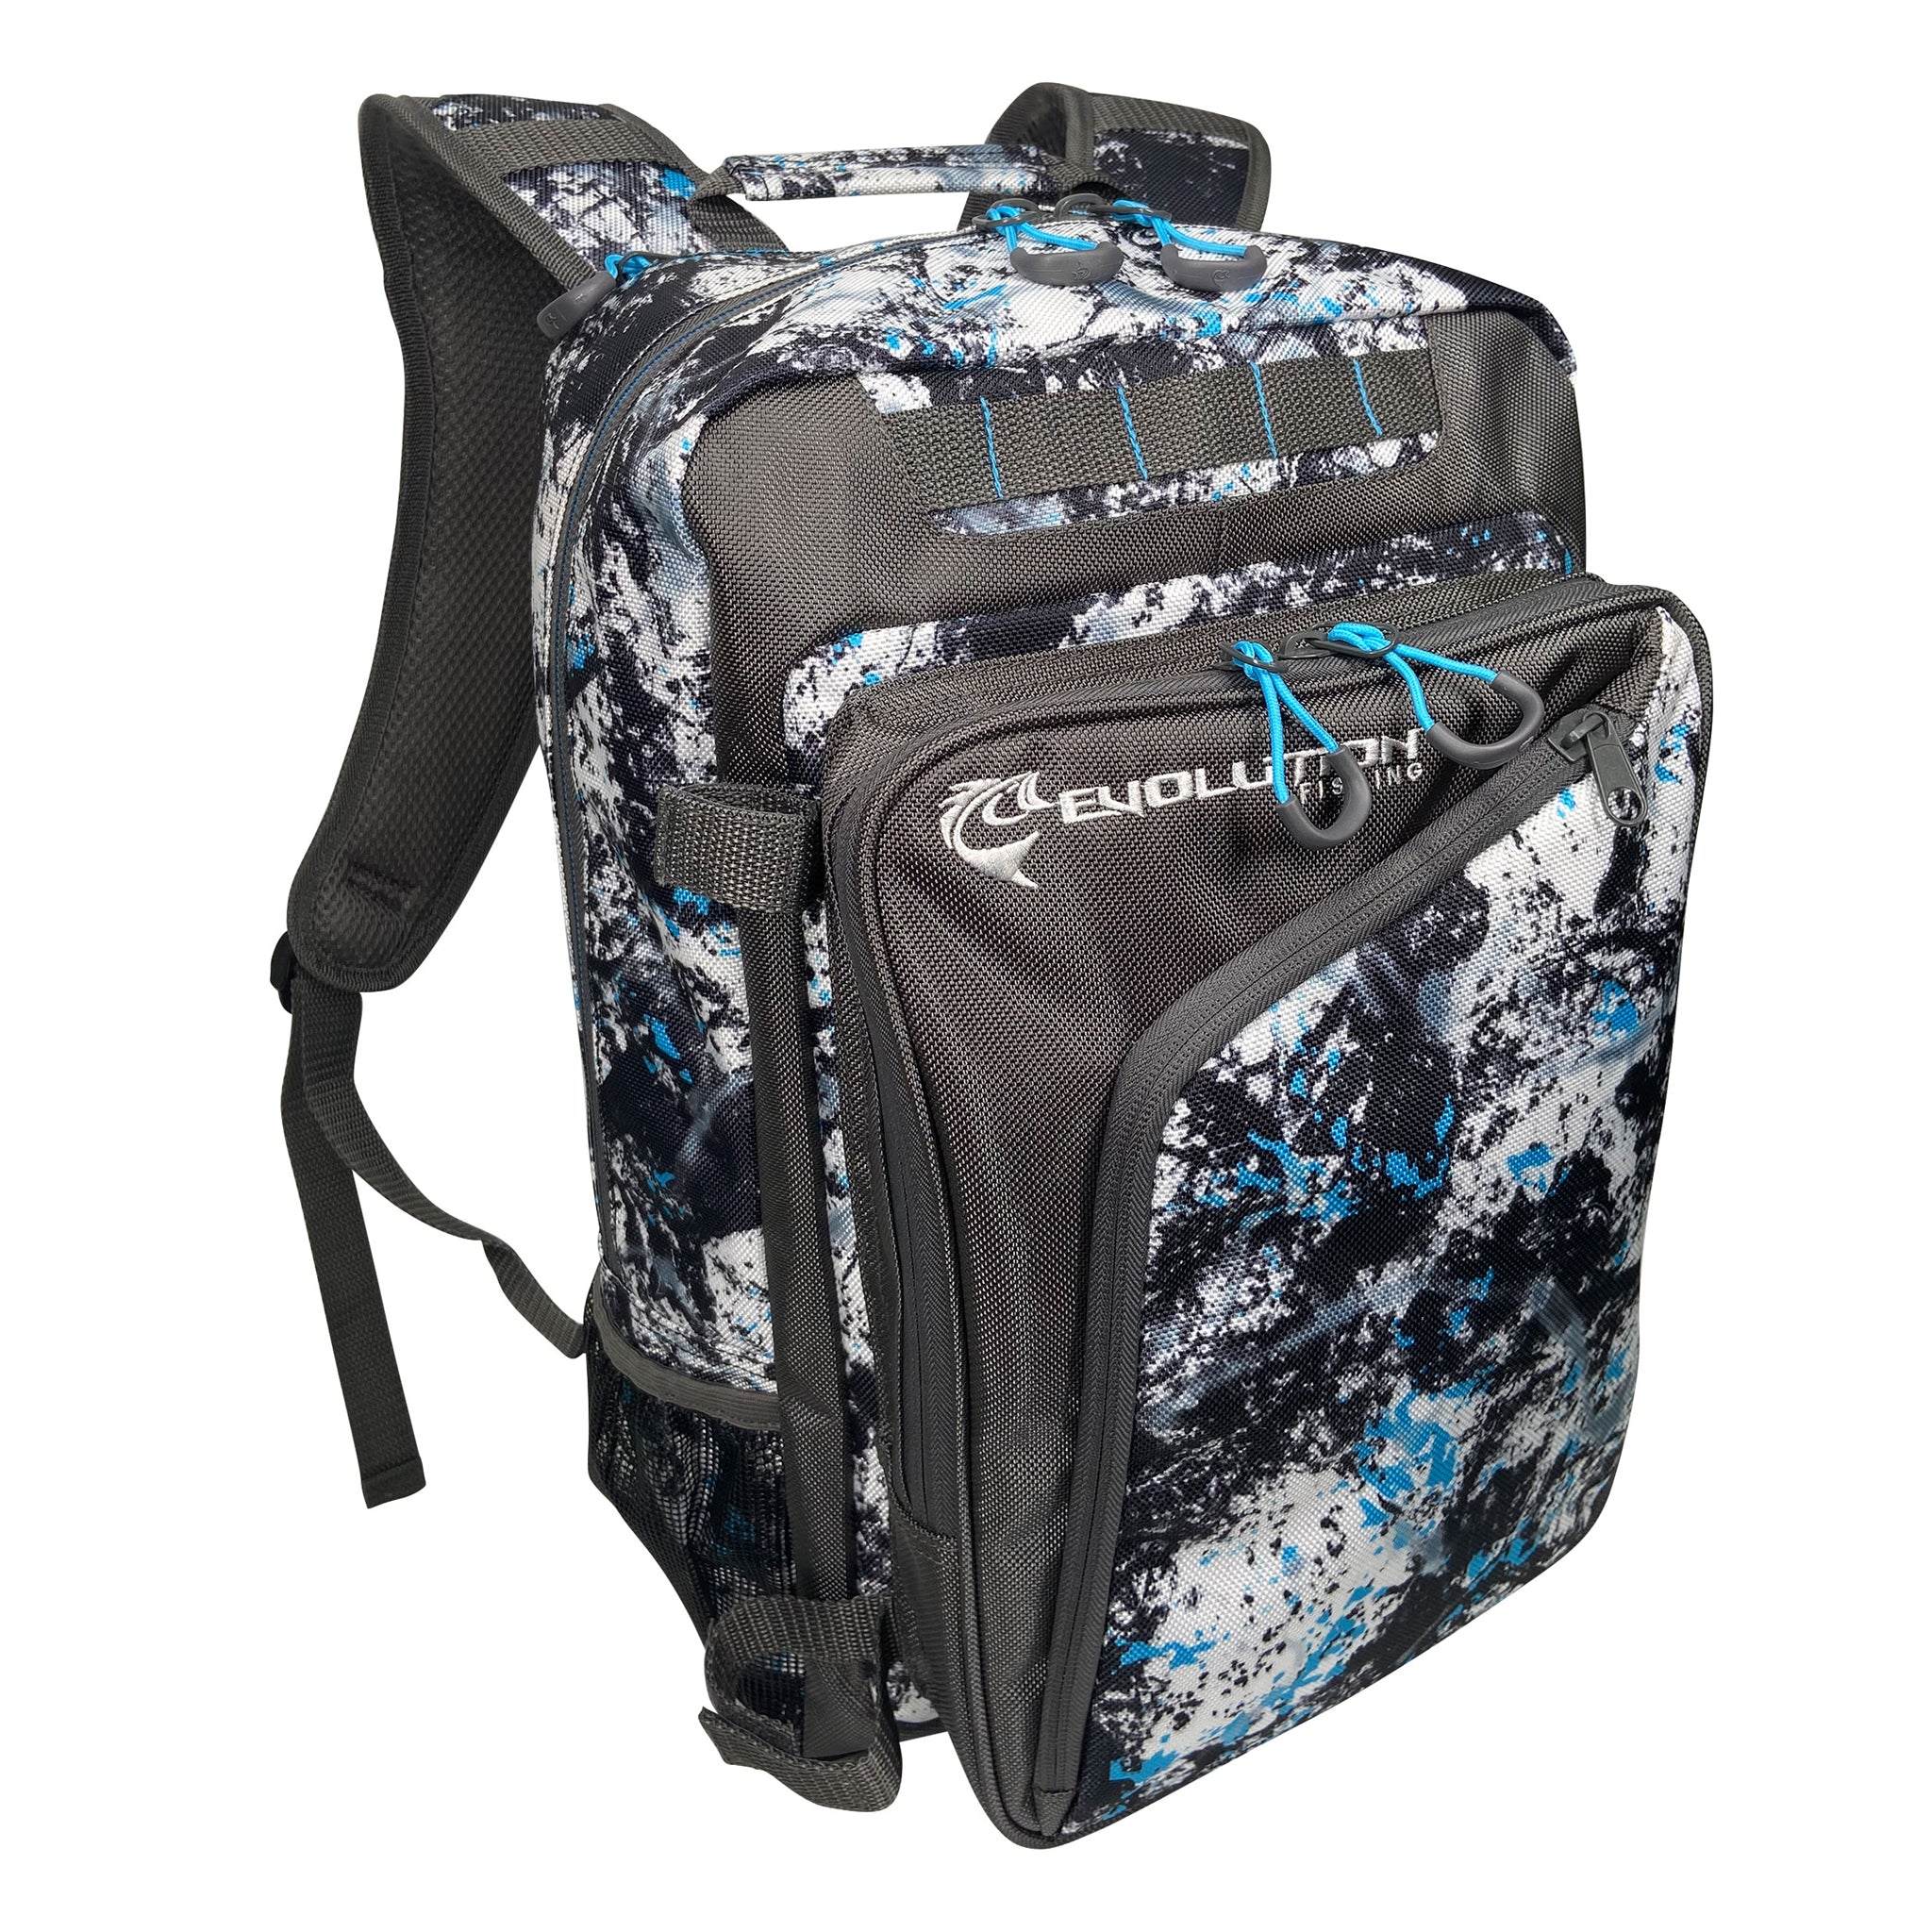 SUPER JOY Fishing Backpack Tackle Sling Bag - Fishing Backpack